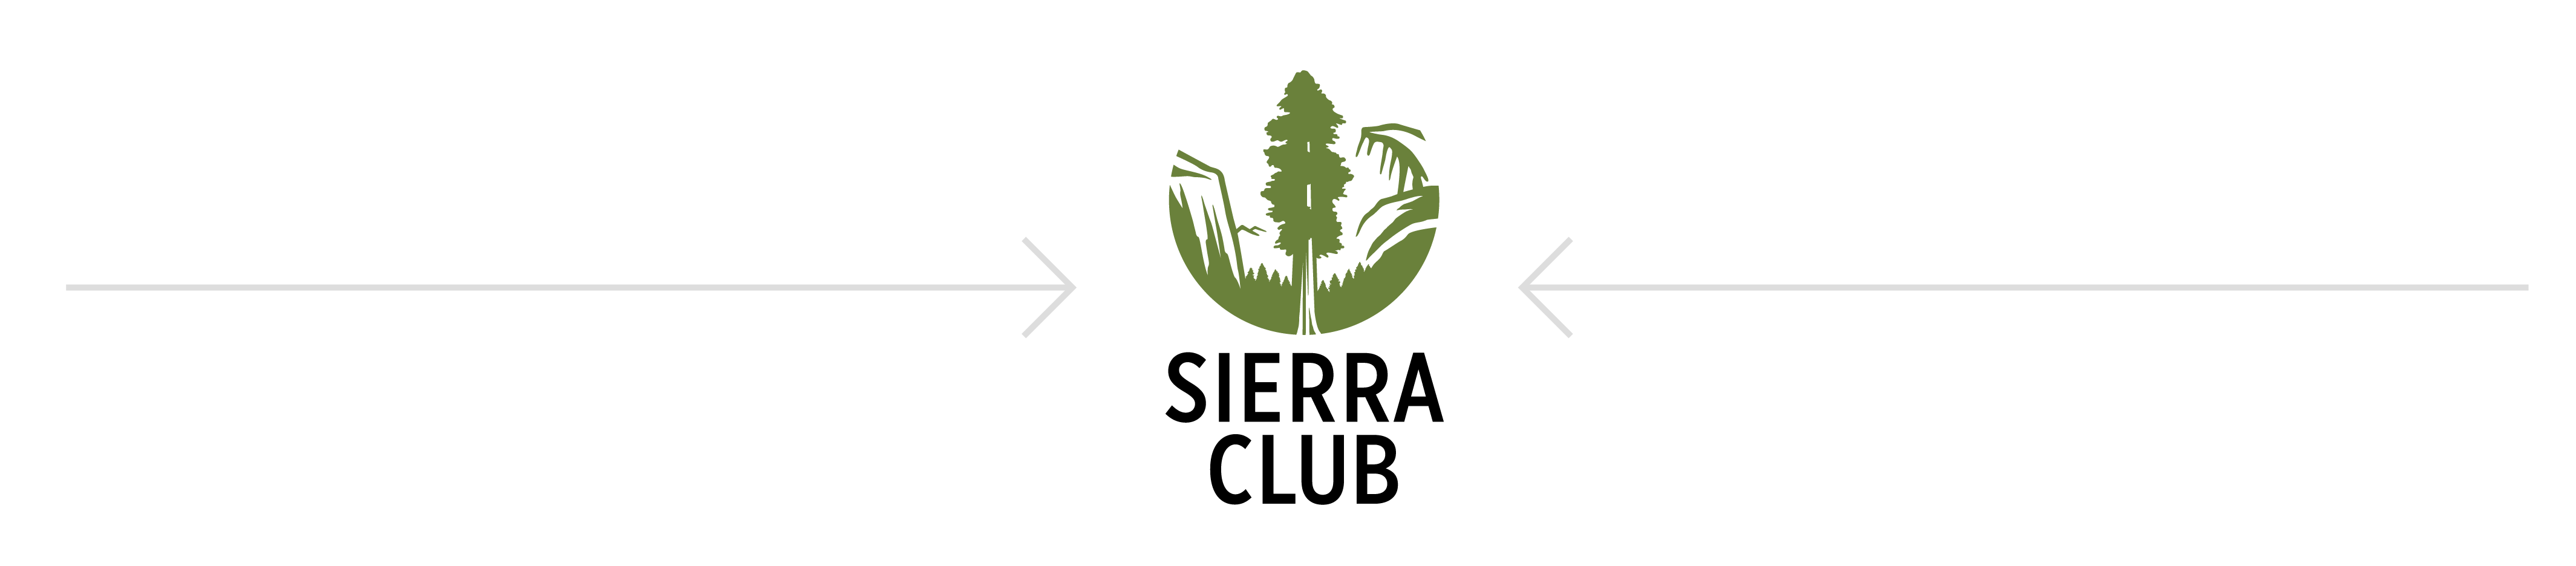 Sierra Club logo - vertical logo preferred layout